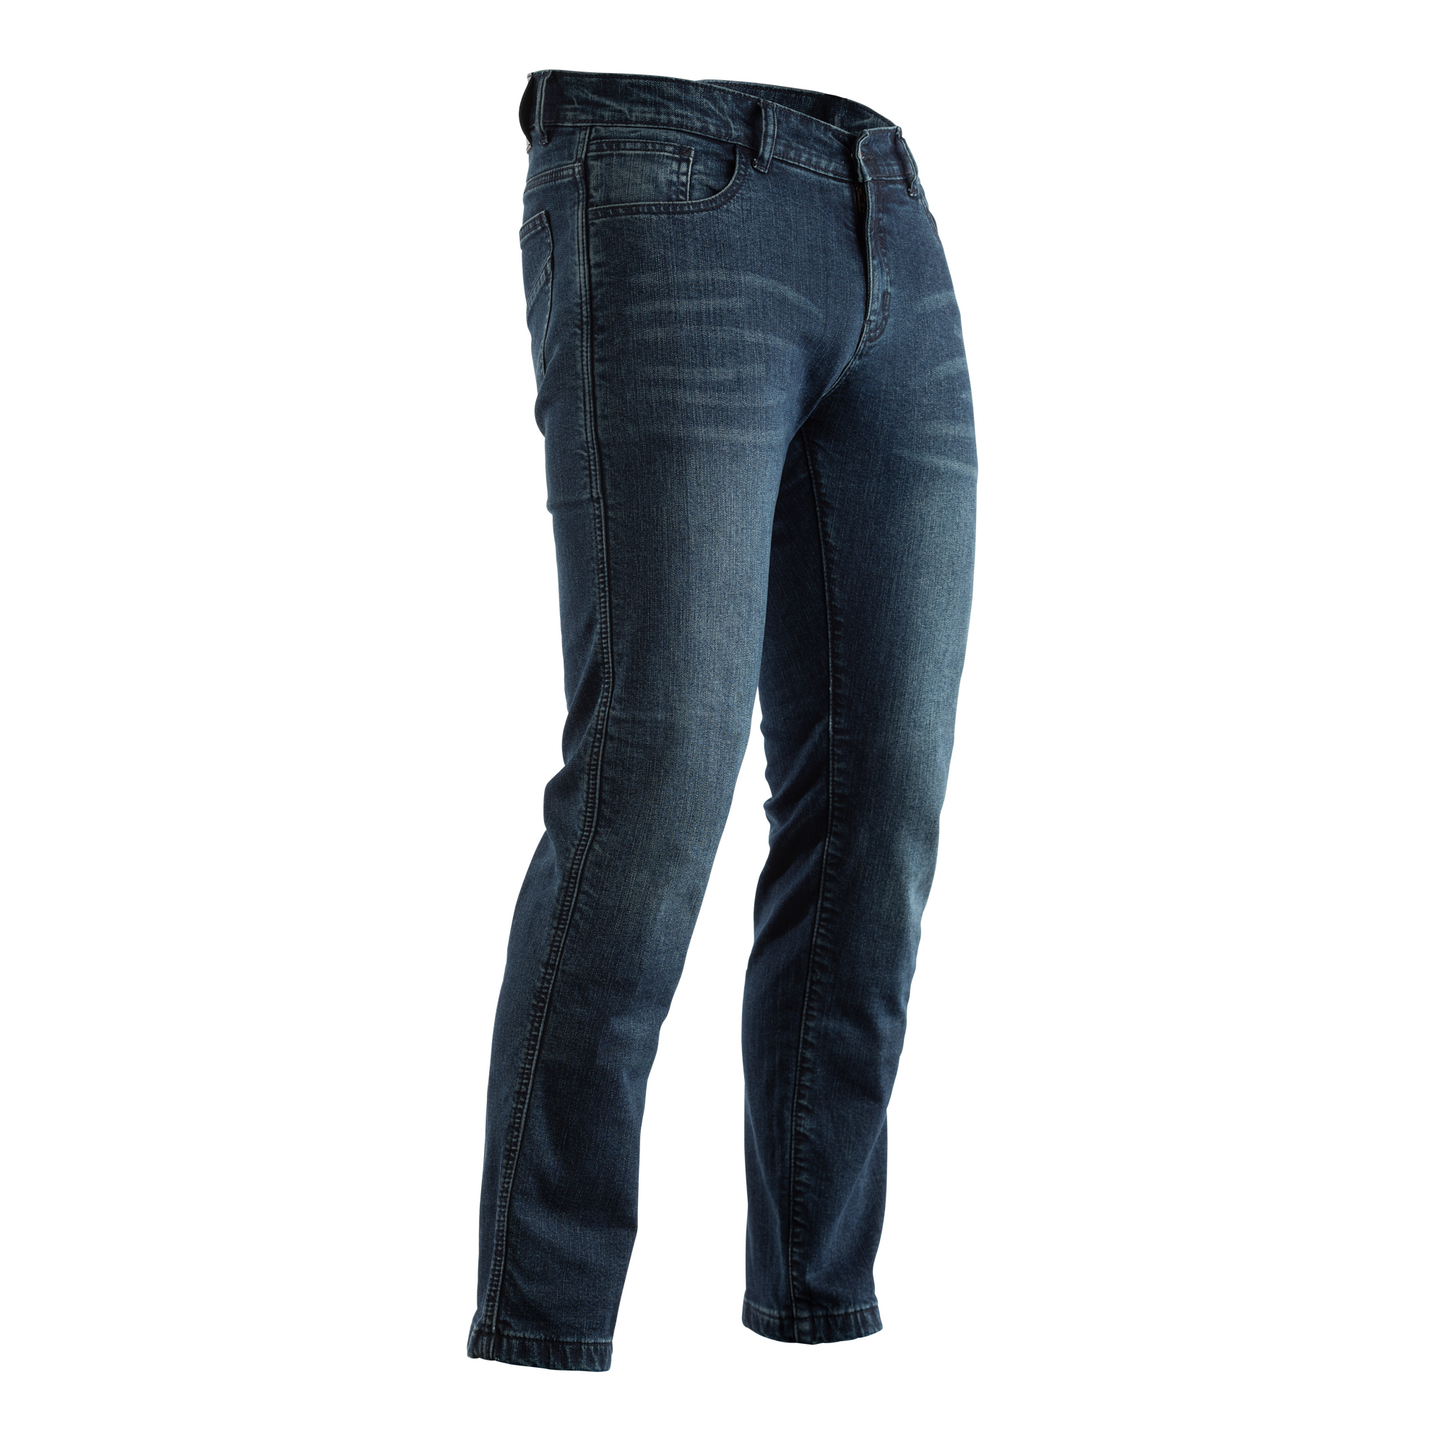 RST Metropolitan CE Men's Denim Riding Jeans - No Armour - Regular Length - Dark Blue